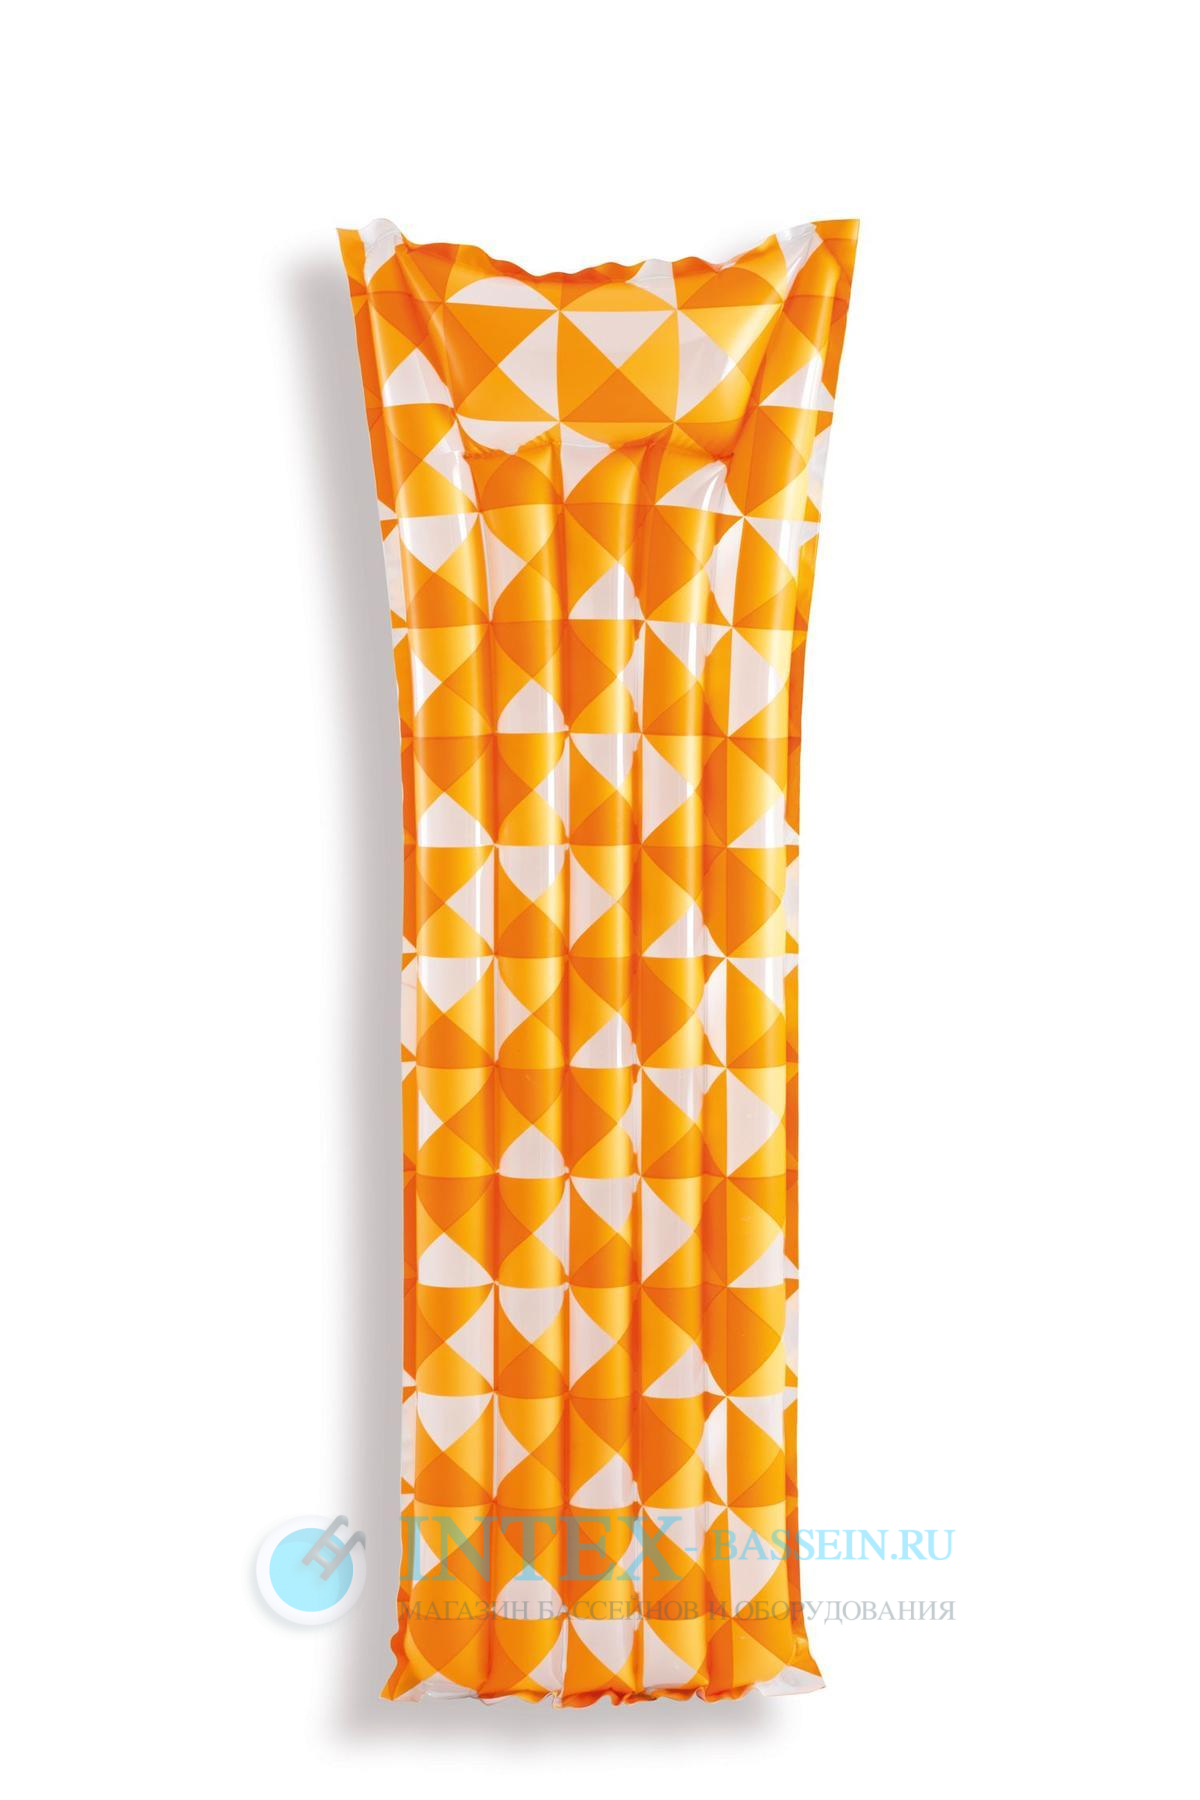 Матрас INTEX "Мозаика" 183 x 69 см, оранжевый, артикул 59712-O